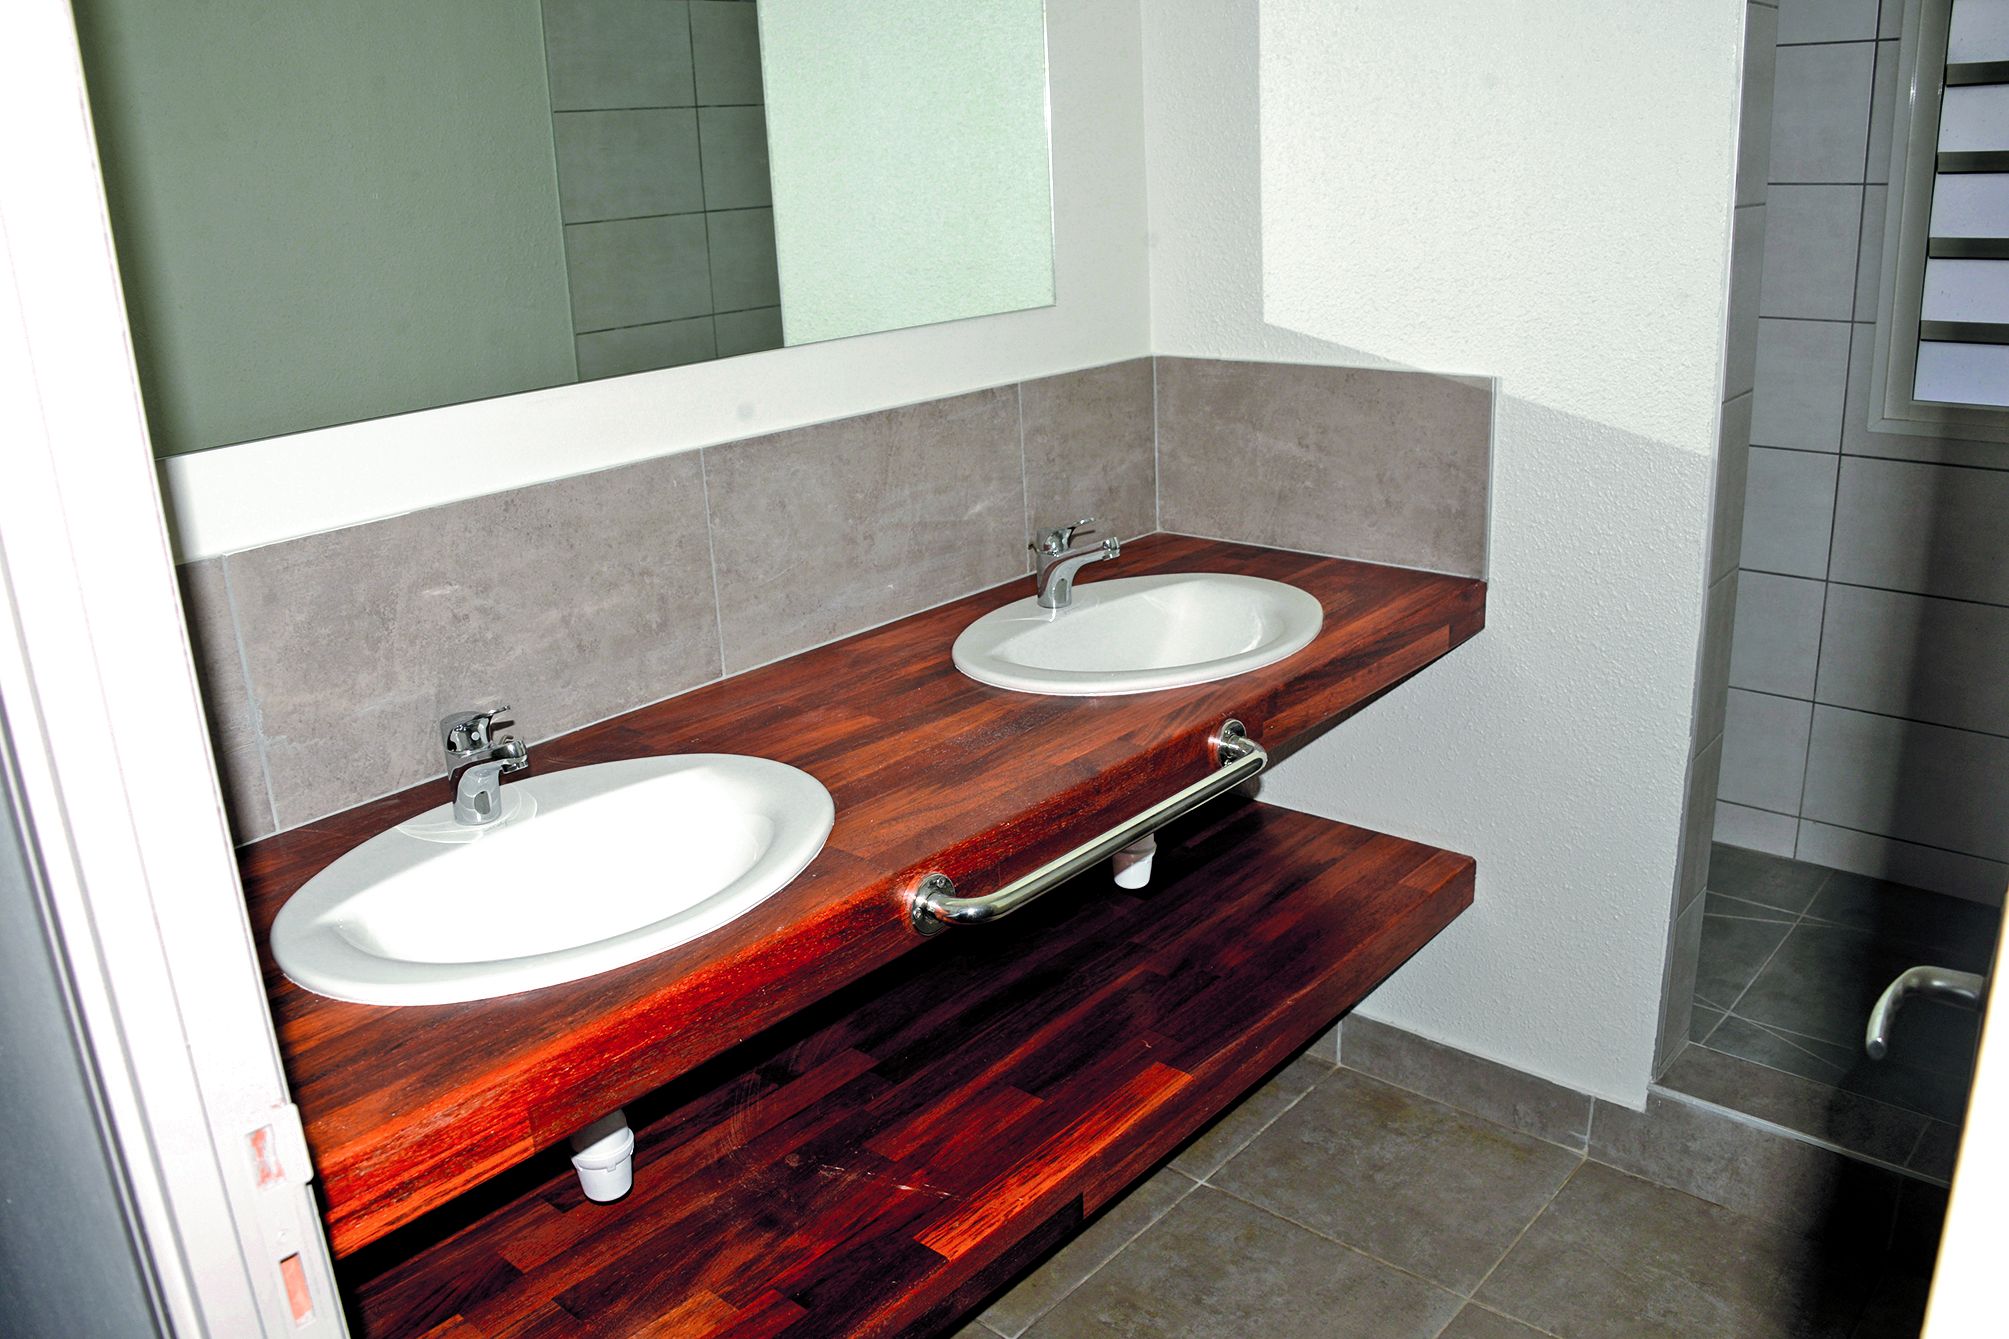 L’aménagement de la salle de bain avec ses doubles vasques est jugé plus pratique par les résidents.